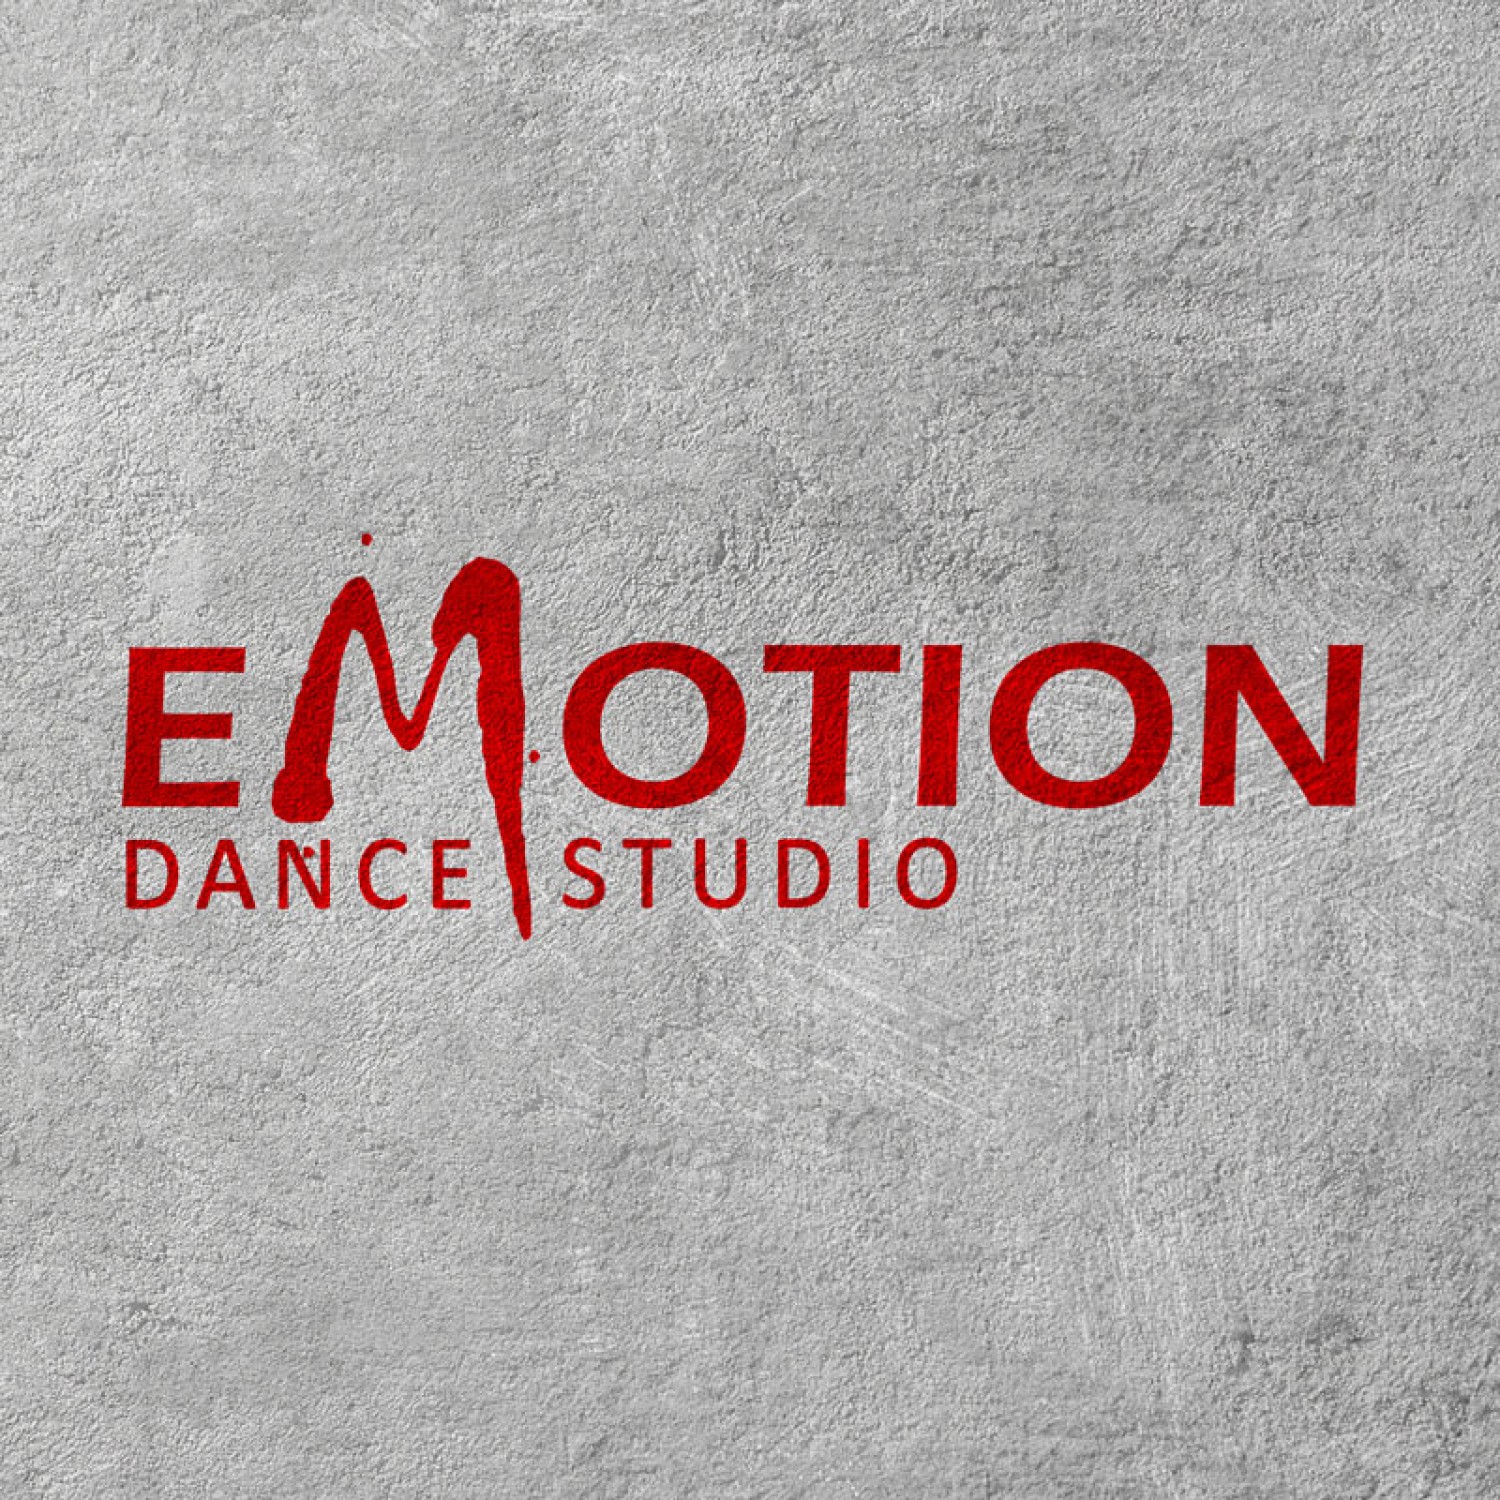 Танцевальная студия "eMotion"